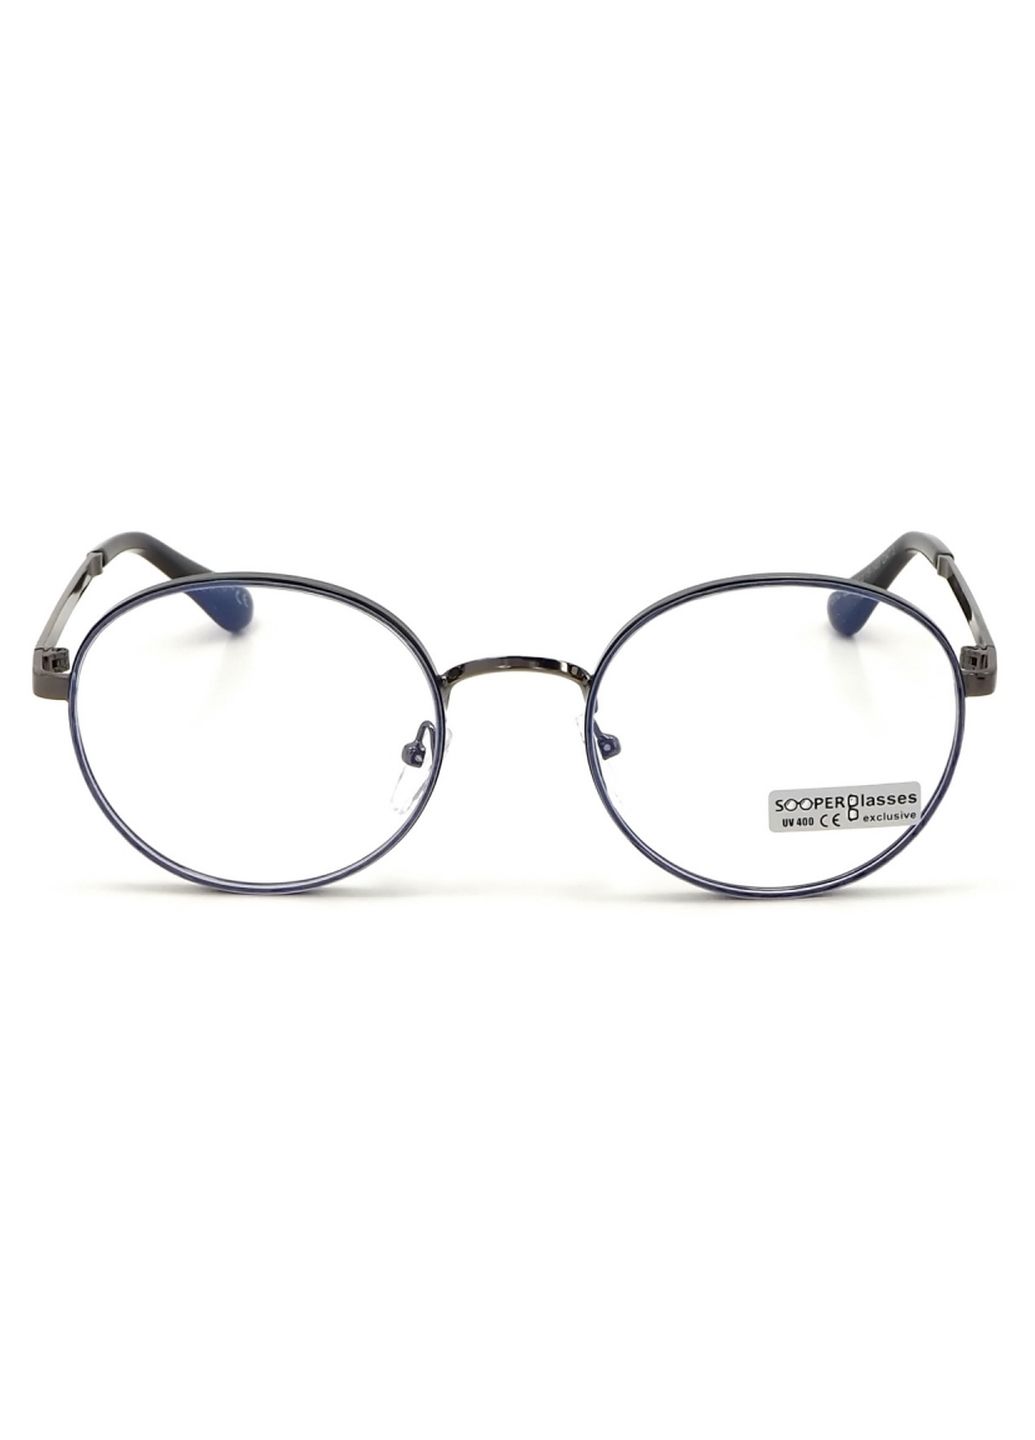 Купить Очки для работы за компьютером Cooper Glasses в серой оправе 124014 в интернет-магазине